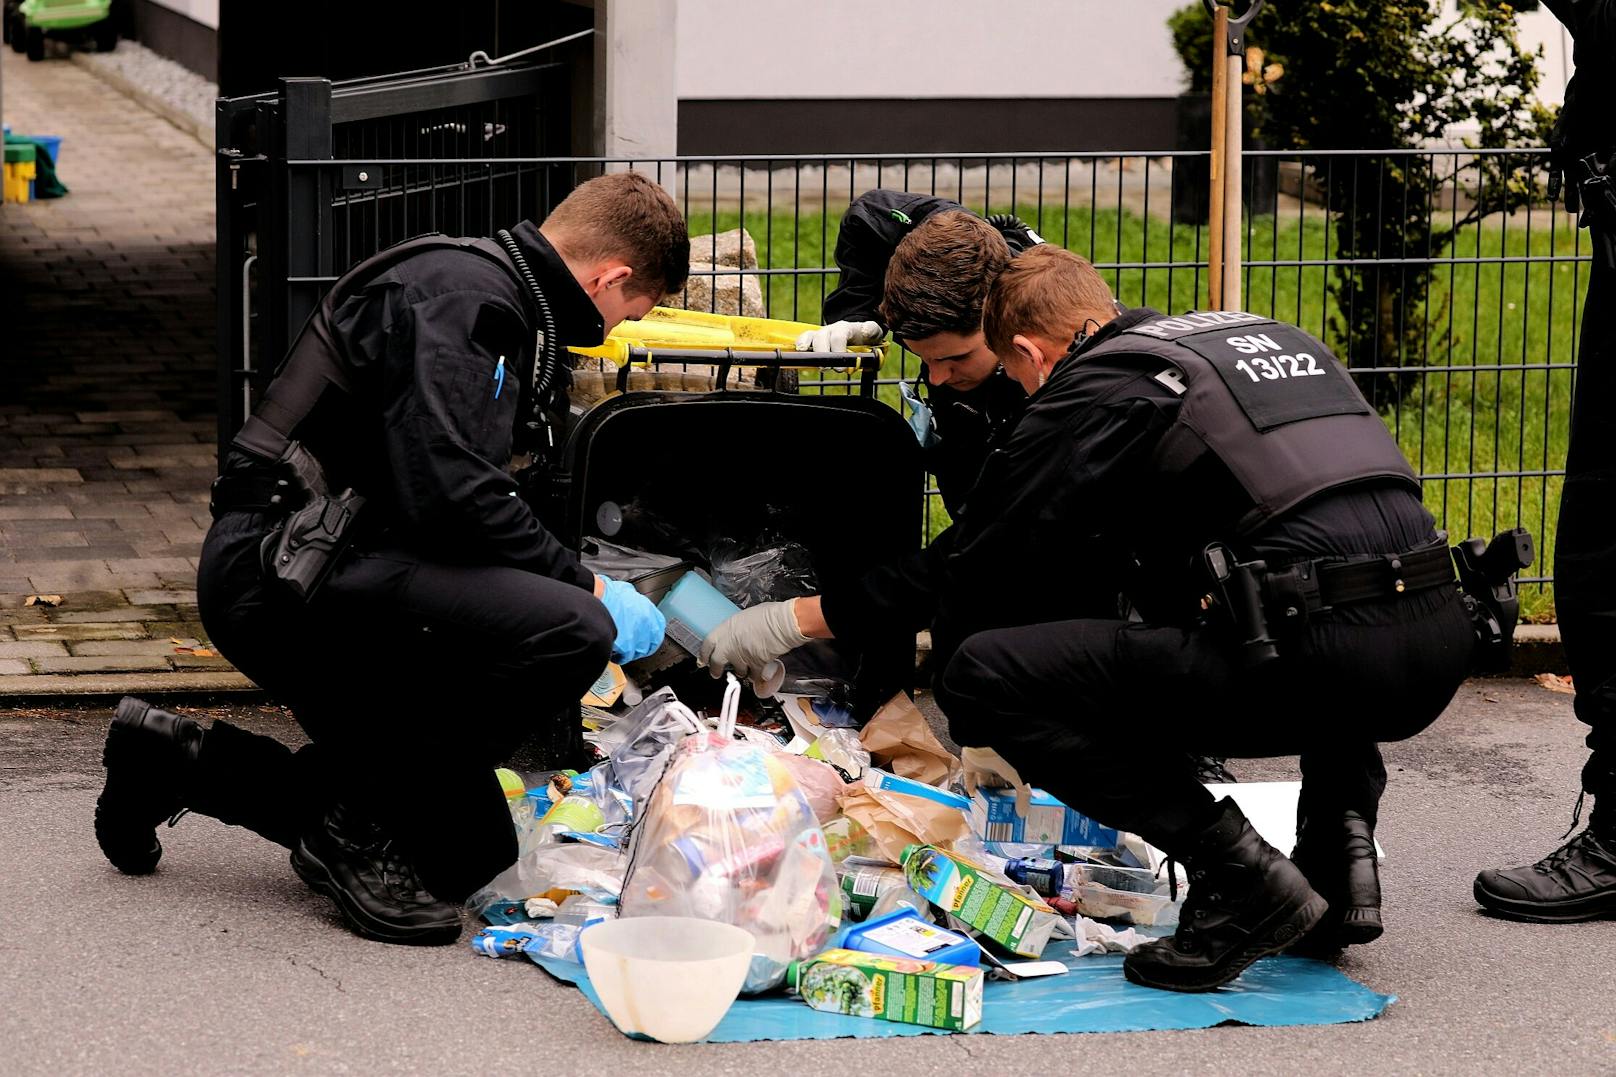 Die Polizei durchsucht den Müll in der Nähe des Tatorts.